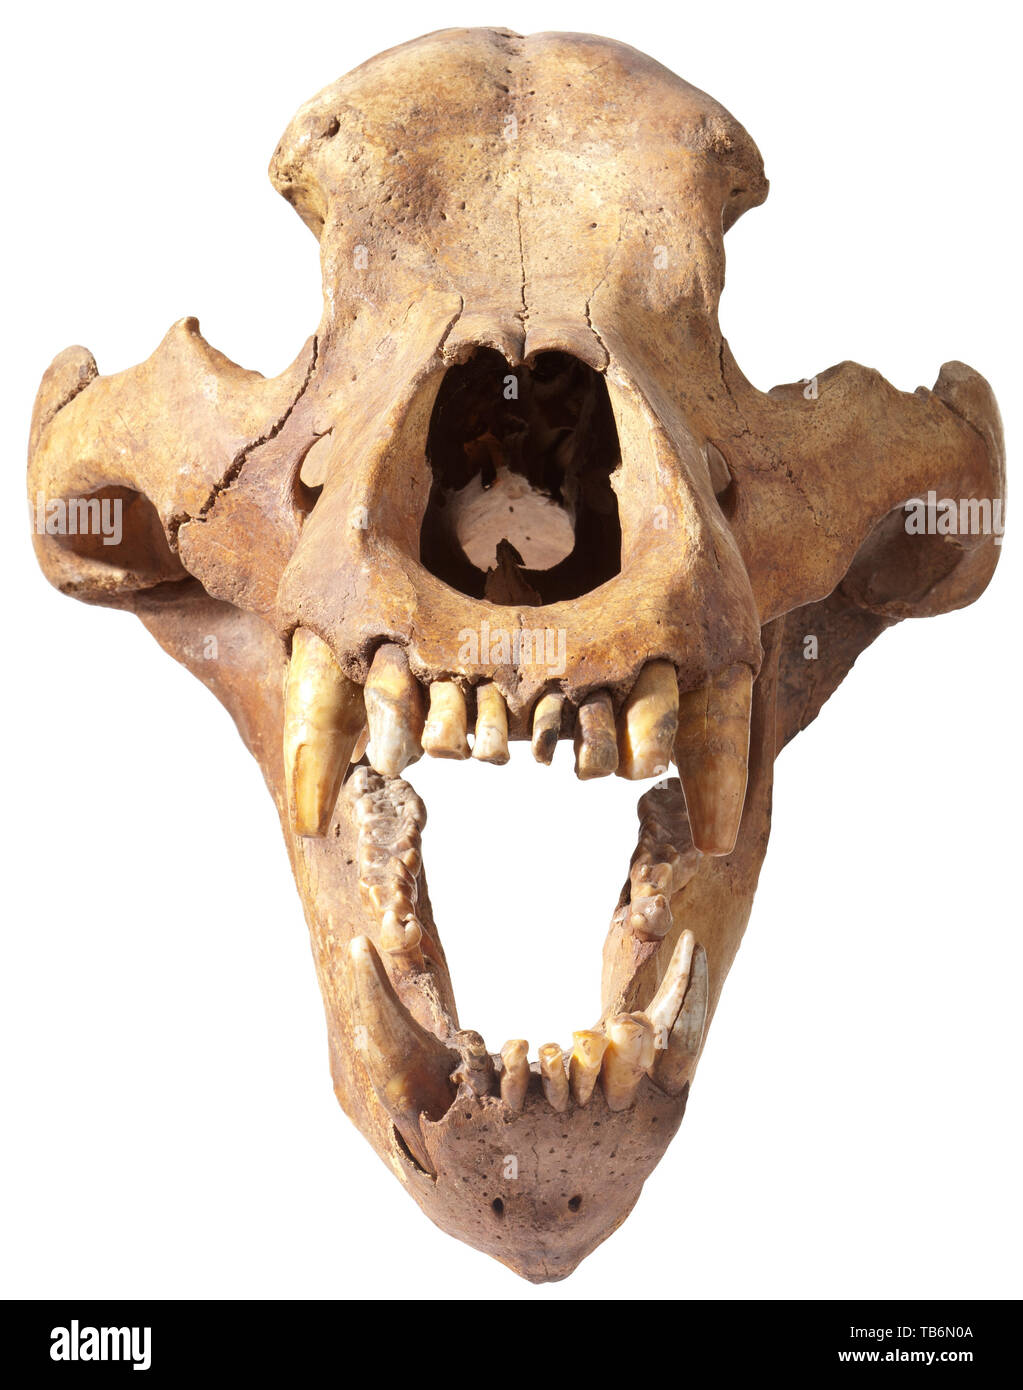 Le crâne d'un ours - l'âge de glace de Sibérie, vers 30 000 avant J.C, un parfait presque entièrement conservée et crâne de l'ours Ursus spelaeus, espèce répandue en Sibérie dans l'ère Pléistocène. Les mâchoires grandes ouvertes, presque toutes les dents encore en place. Dans un excellent état de conservation. Hauteur 24 cm, longueur 52 cm, largeur 30 cm. On trouve rarement dans cet état. Artisanat, Artisanat, Artisanat, objet, objets, alambics, clipping, coupures, cut out, cut-out, cut-outs, historique, préhistorique, historique Additional-Rights Clearance-Info-Not-Available- Banque D'Images